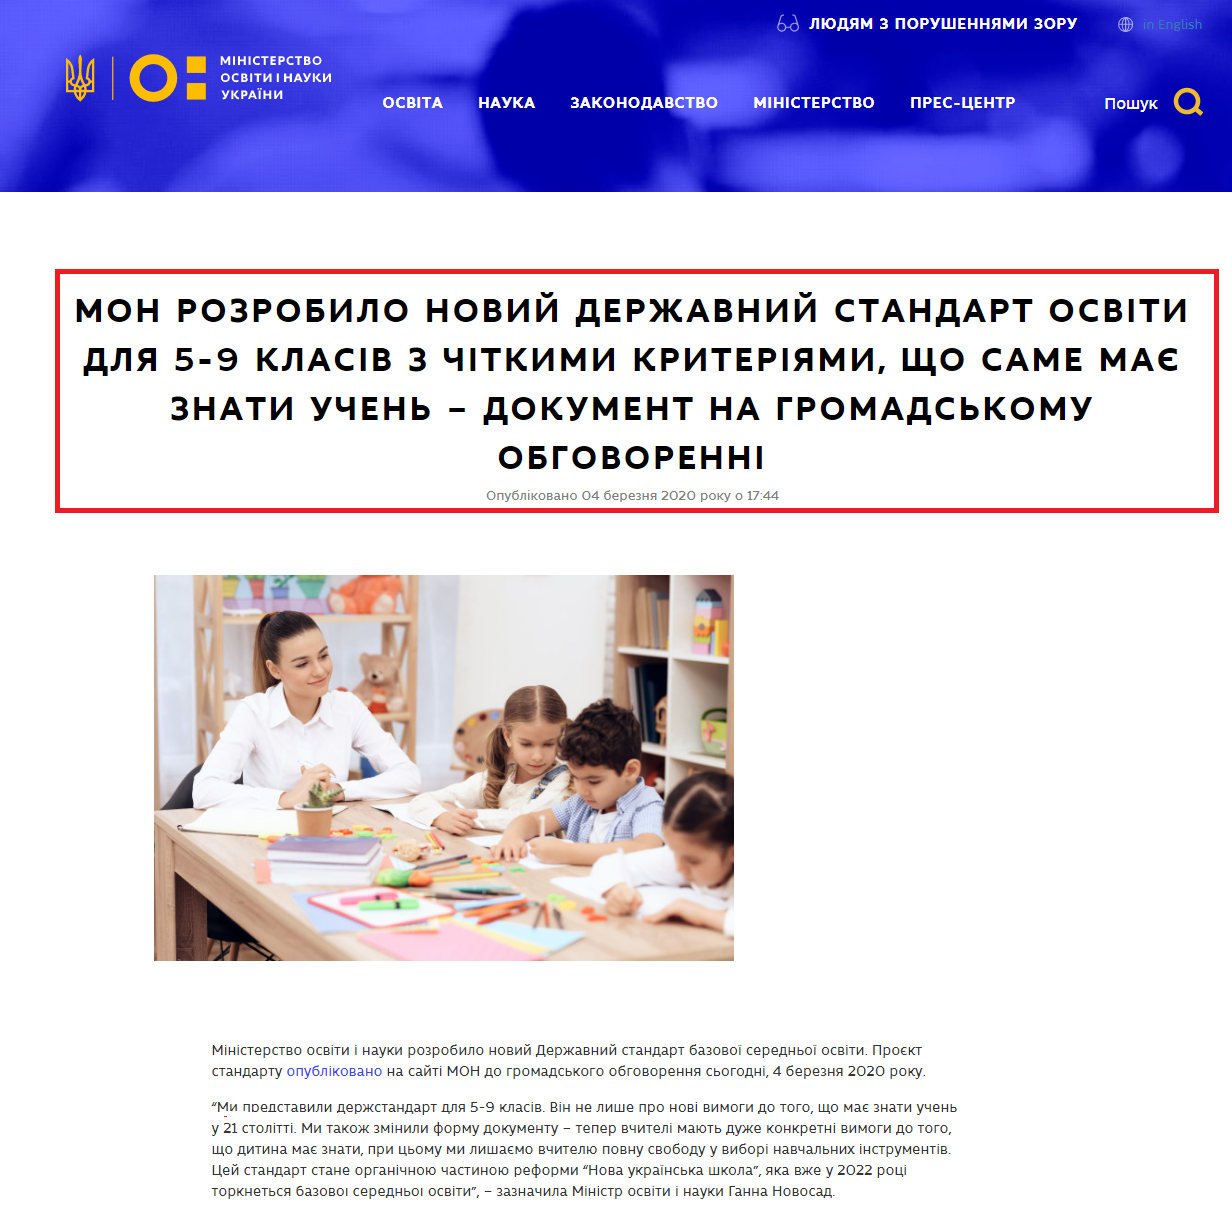 https://mon.gov.ua/ua/news/mon-rozrobilo-novij-derzhavnij-standart-osviti-dlya-5-9-klasiv-z-chitkimi-kriteriyami-sho-same-maye-znati-uchen-dokument-na-gromadskomu-obgovorenni